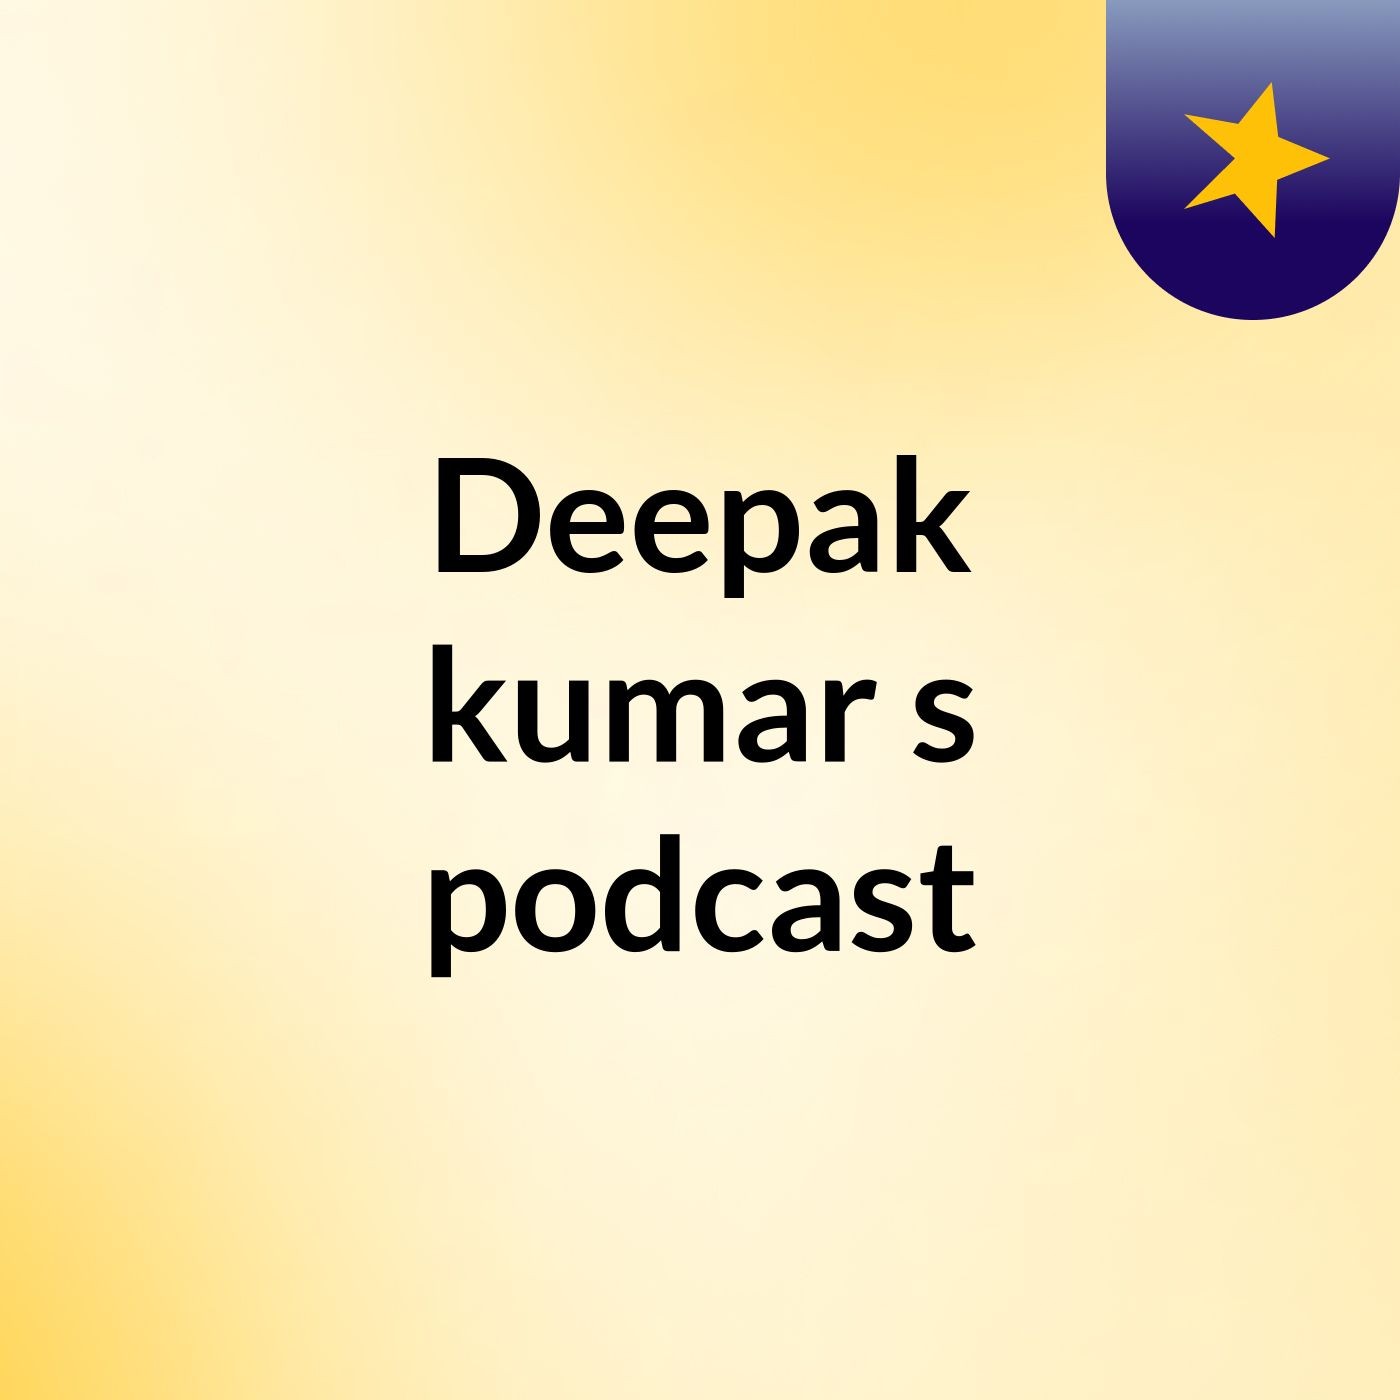 Deepak kumar's podcast